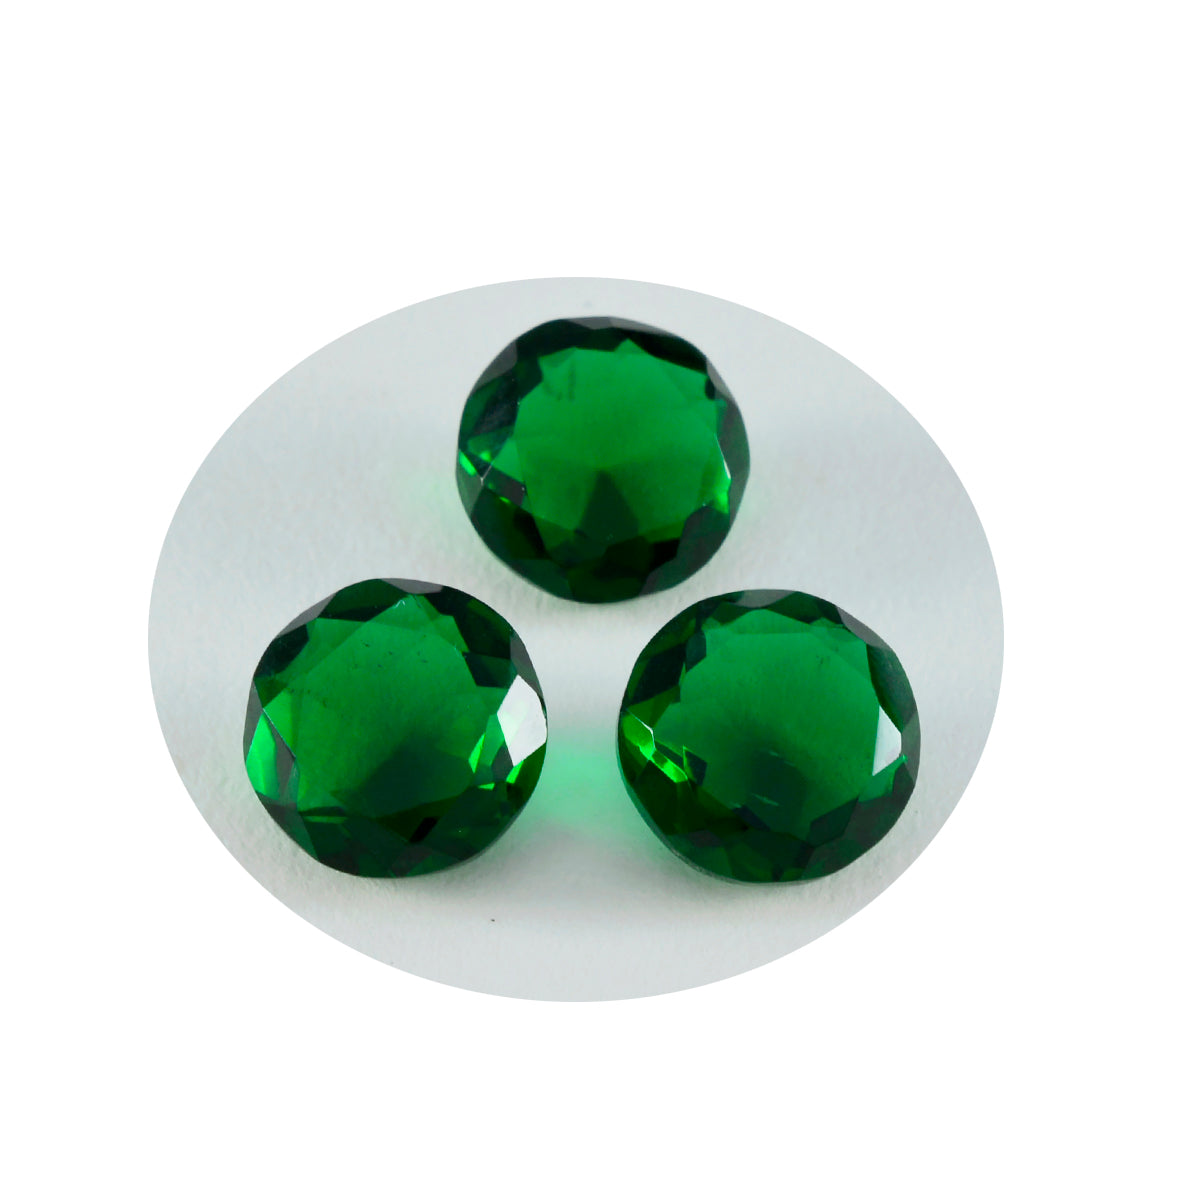 Riyogems 1pc vert émeraude cz facettes 12x12mm forme ronde bonne qualité gemme